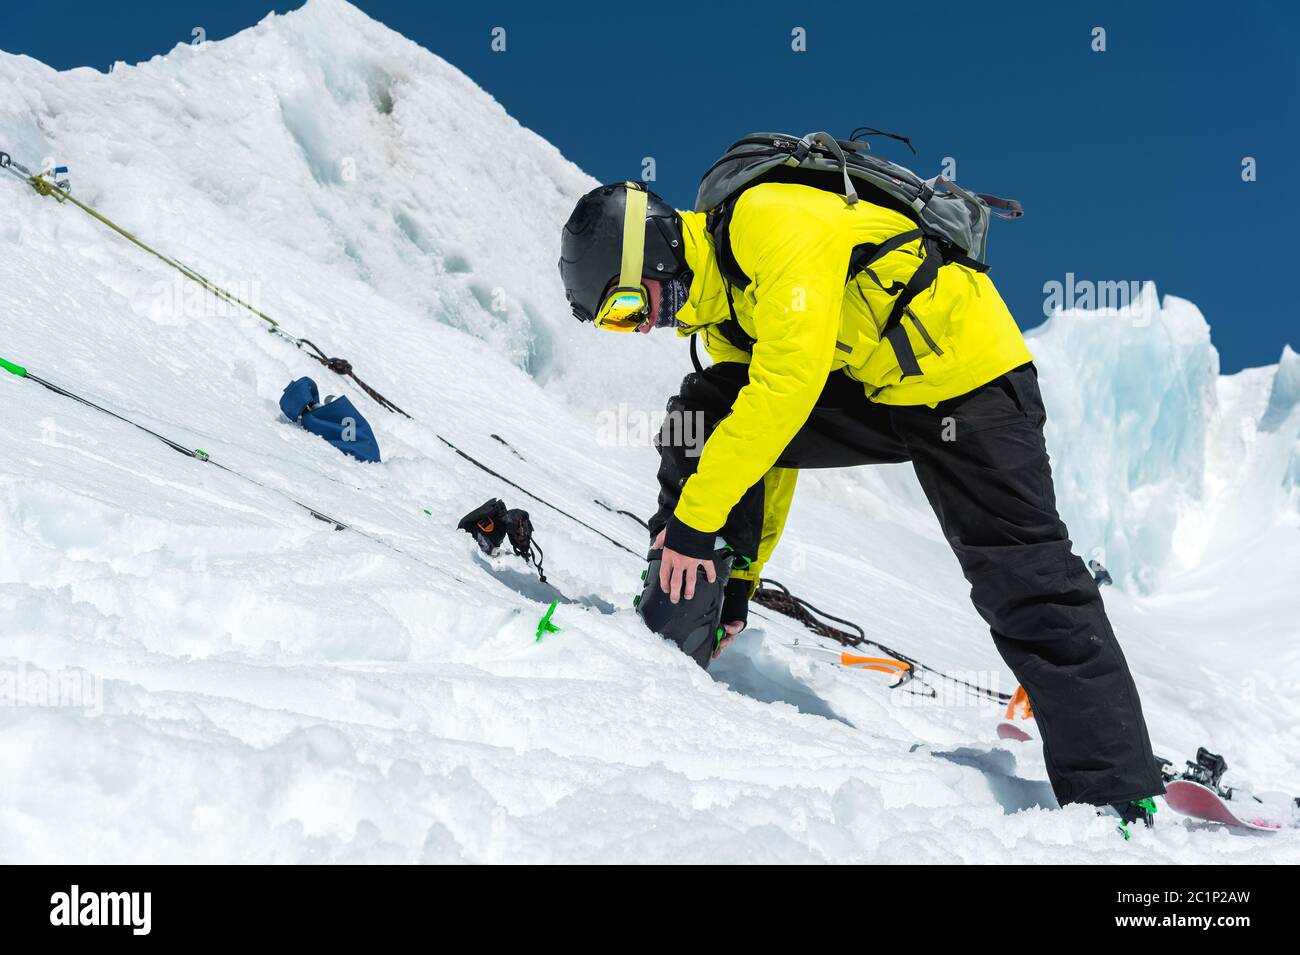 Uno sciatore professionista che si trova su un ghiacciaio si prepara per un salto mentre si allestiscono le attrezzature da sci. Il concetto di qualità traini Foto Stock